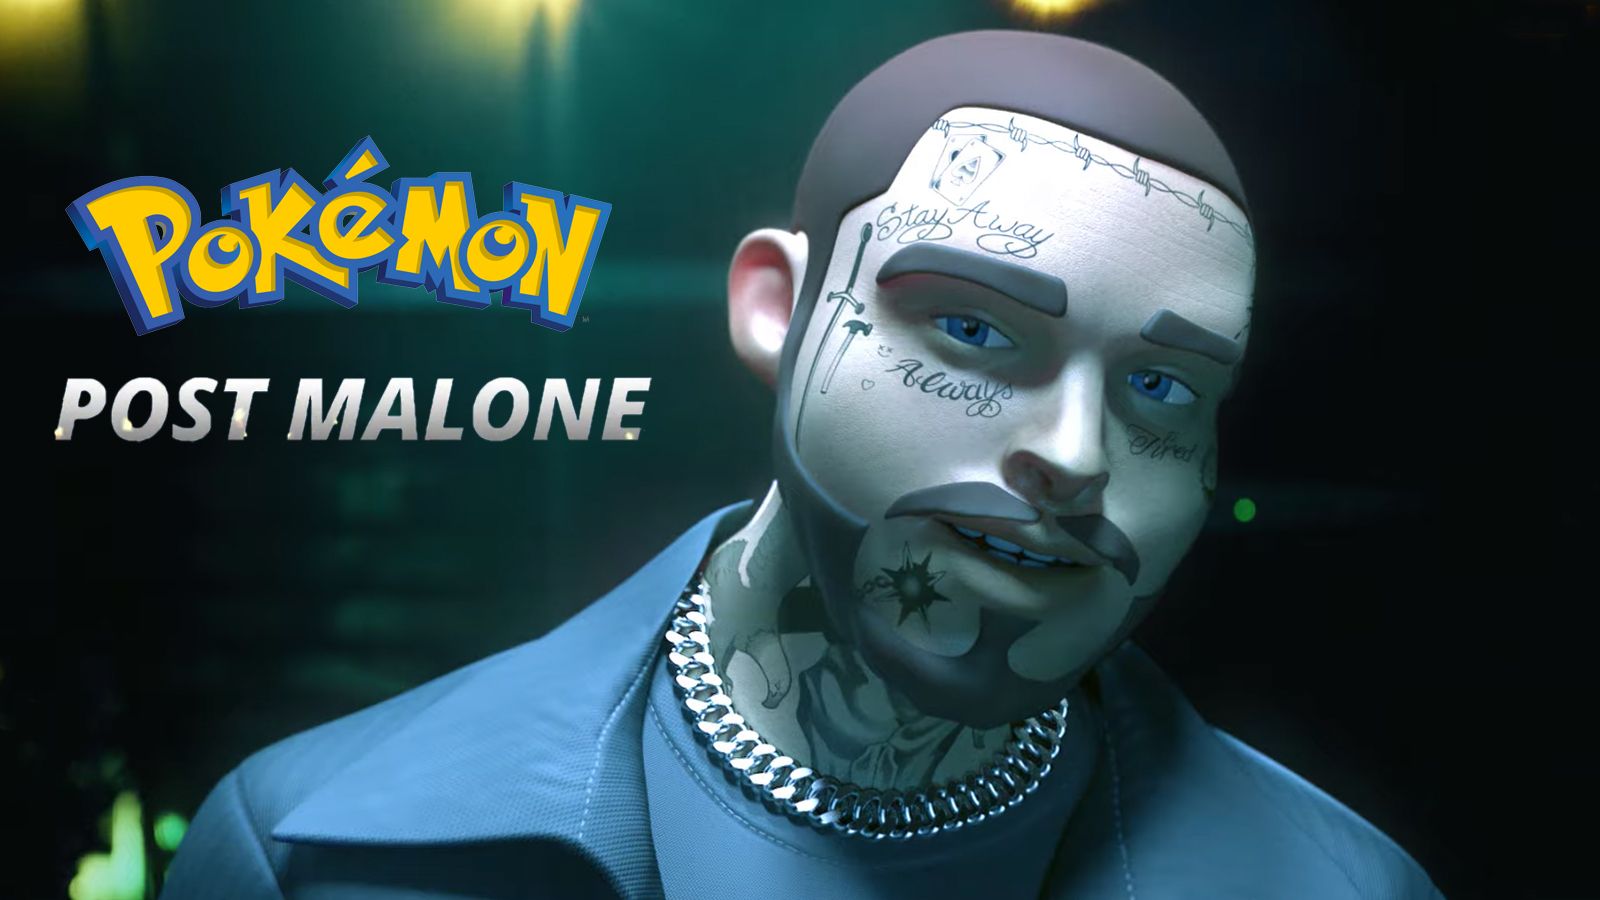 ย้อนชมคอนเสิร์ต Post Malone ครบรอบ 25 ปี Pokémon